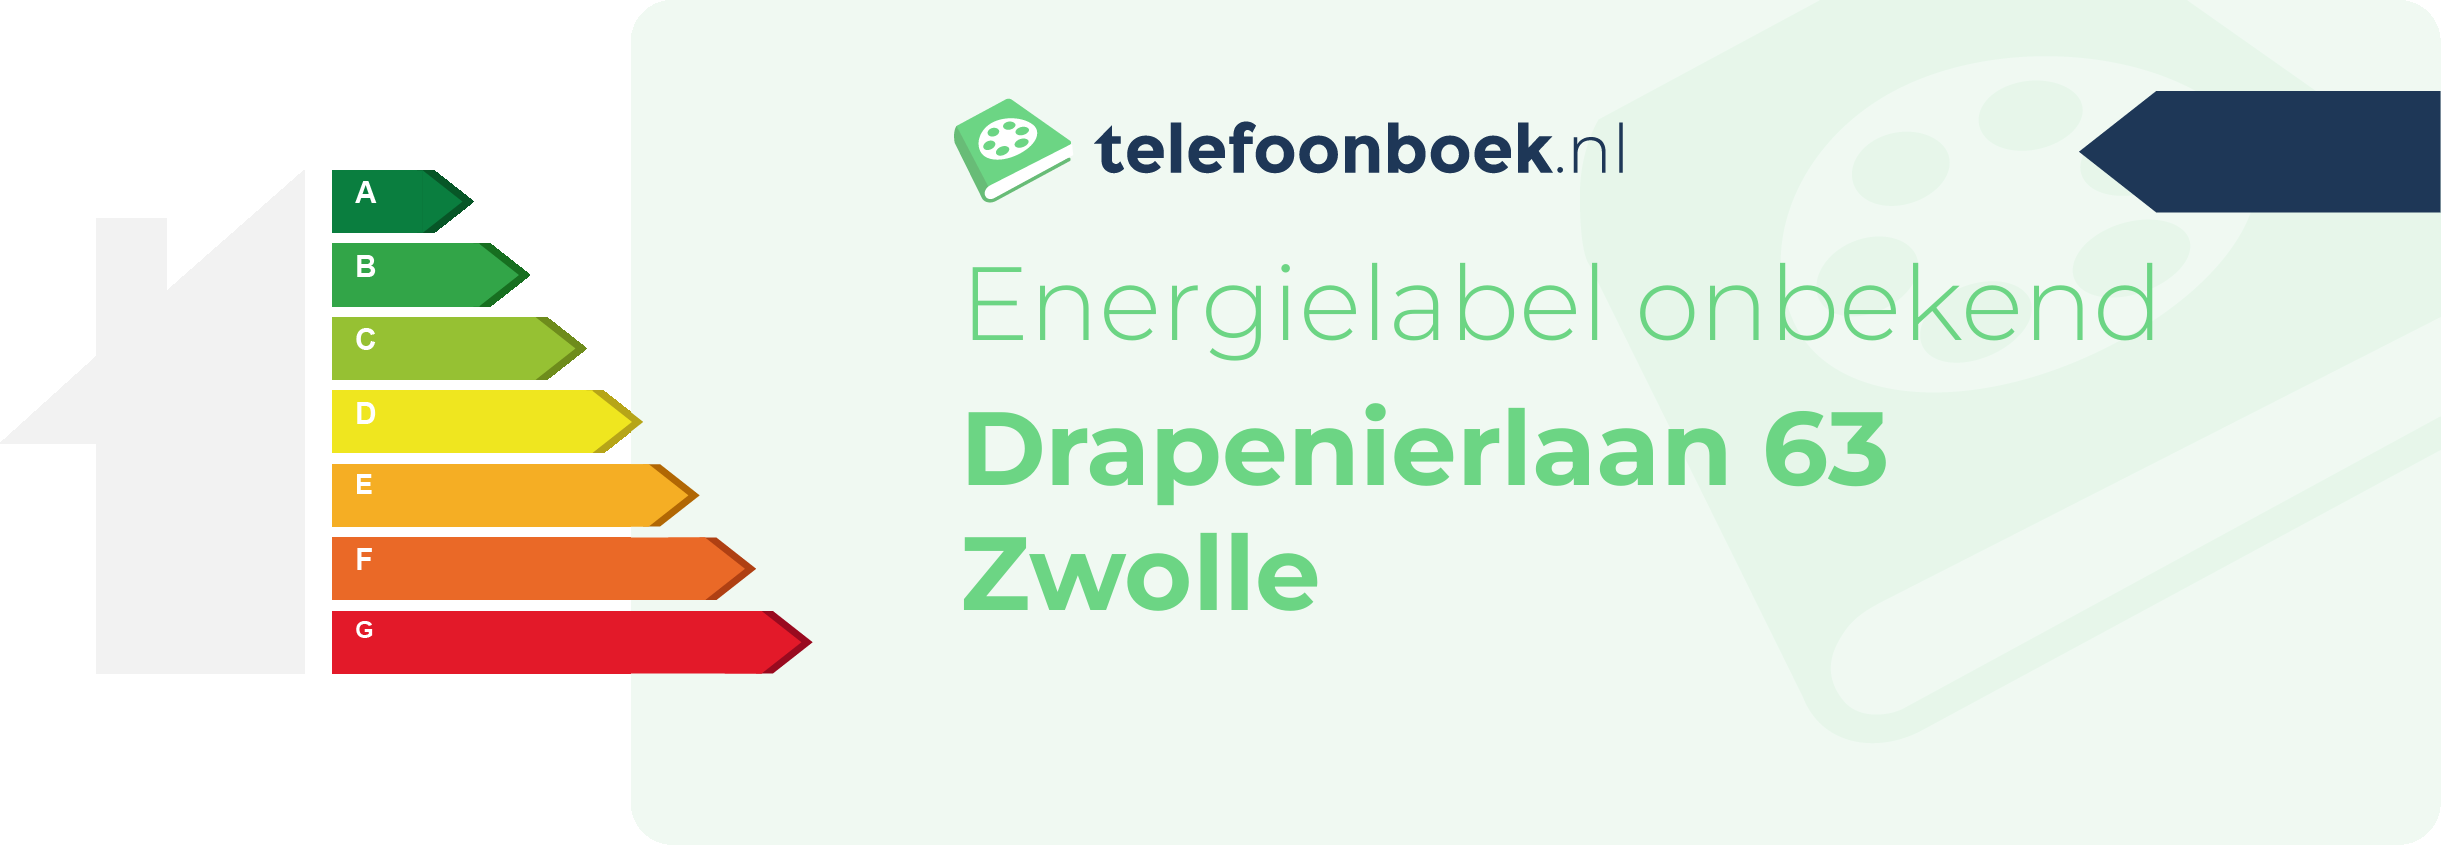 Energielabel Drapenierlaan 63 Zwolle